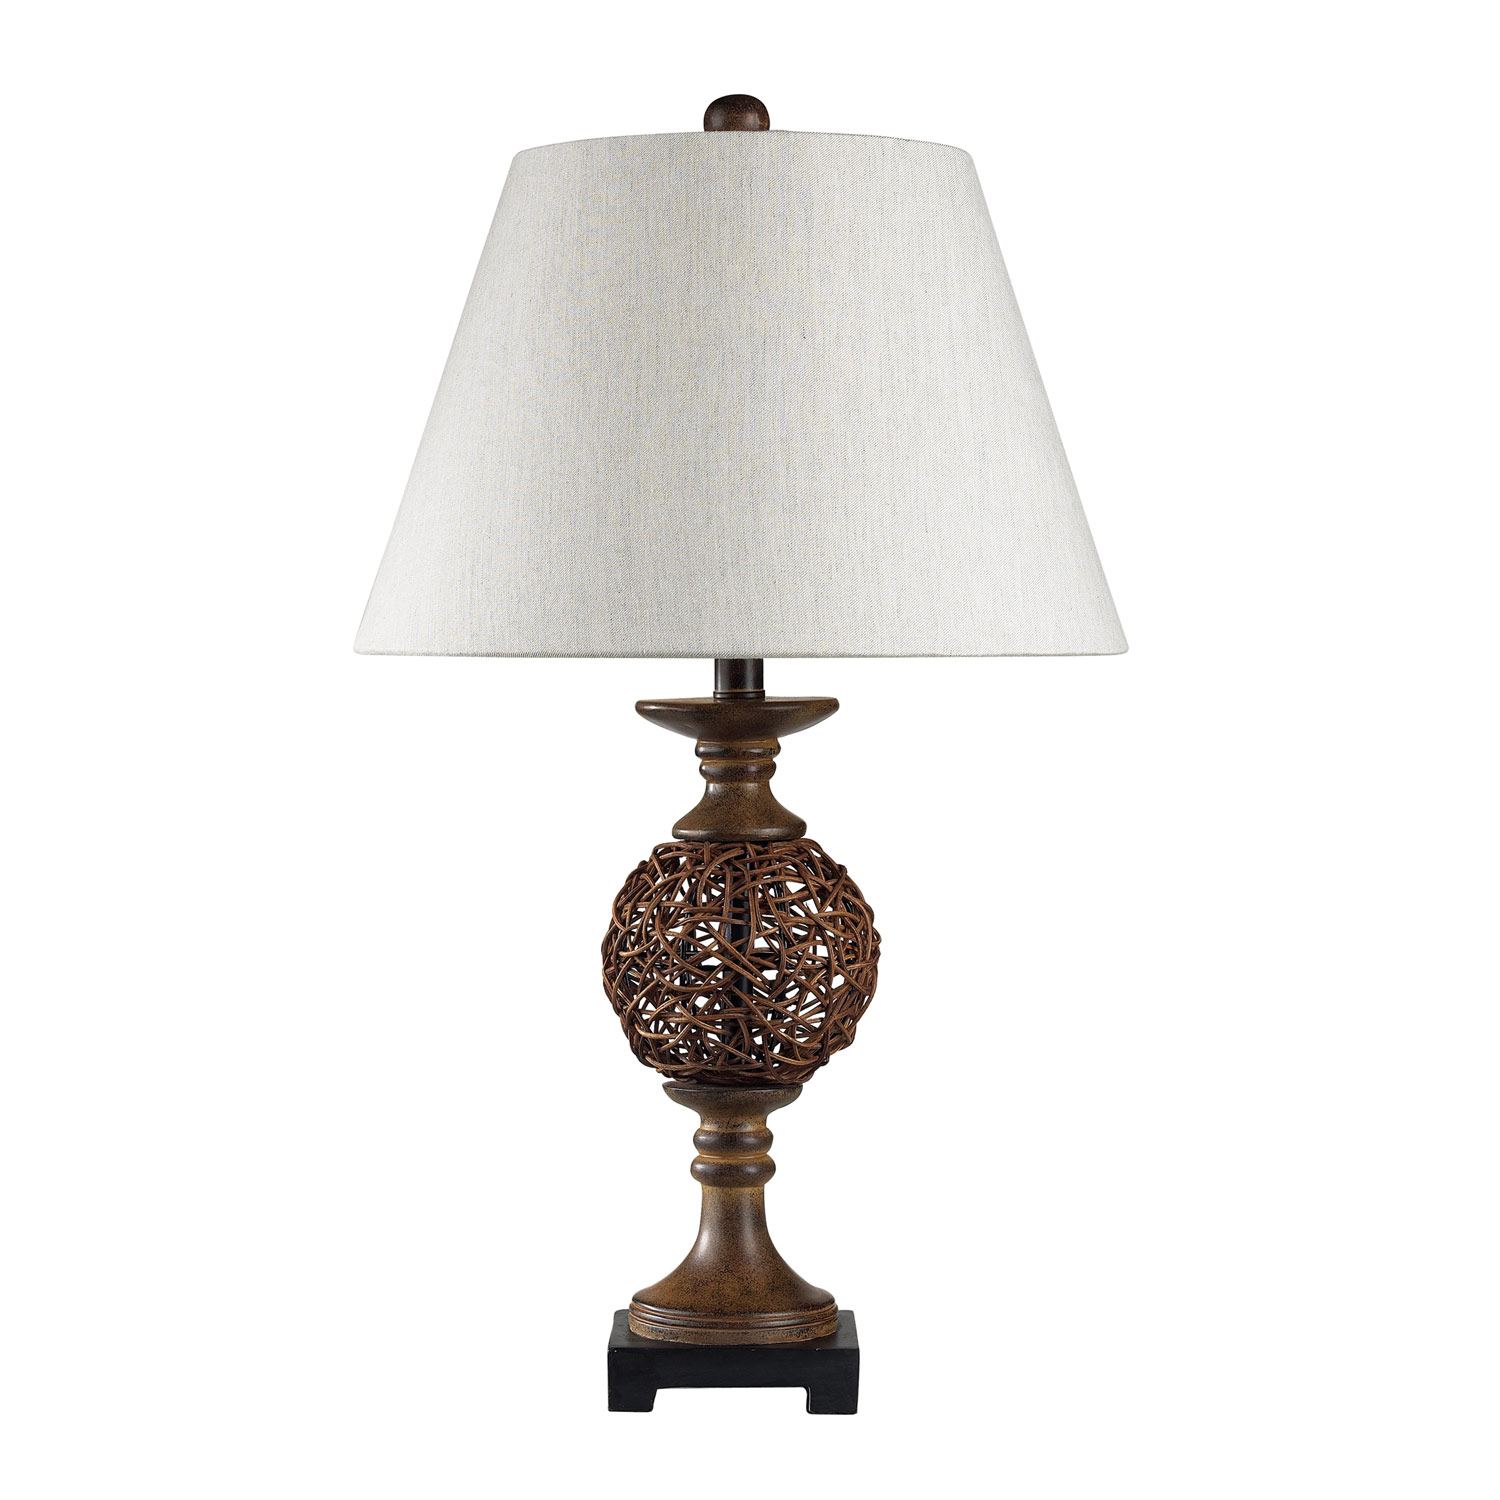 Elk Lighting 111-1085 Atmore Table Lamp - Natural